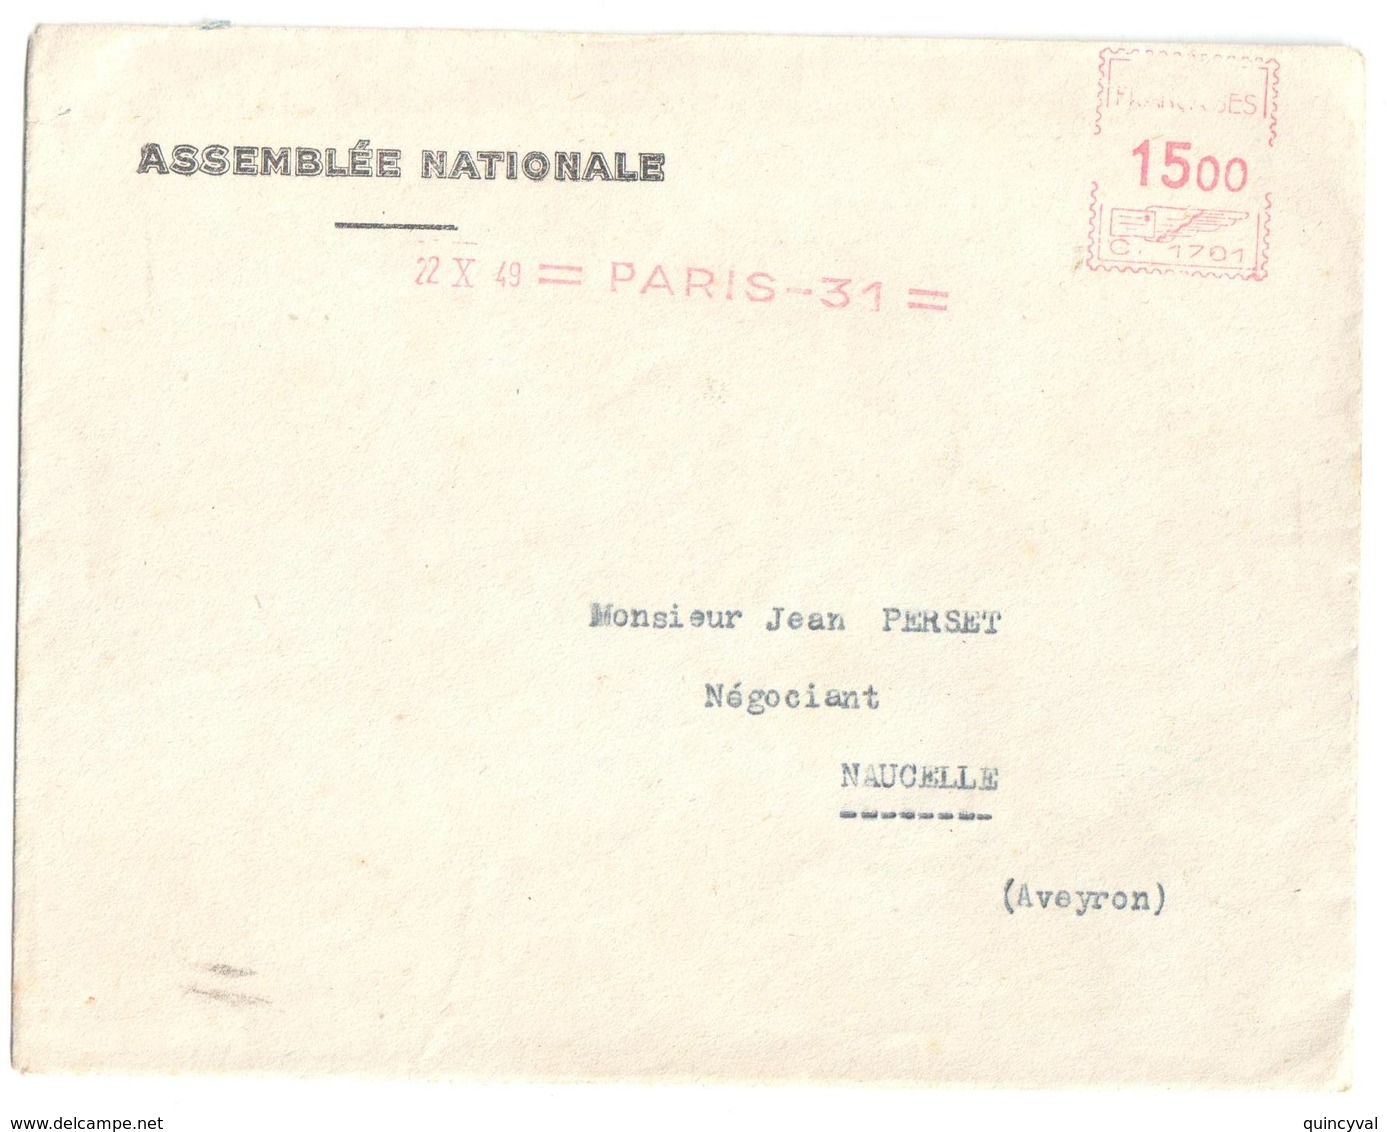 4563 ASSEMBLEE NATIONALE Lettre Entête 15 F Ob 1949 EMA Machine C Paris 31 Dest NACELLE Aveyron Courrier "amusant" - EMA ( Maquina De Huellas A Franquear)